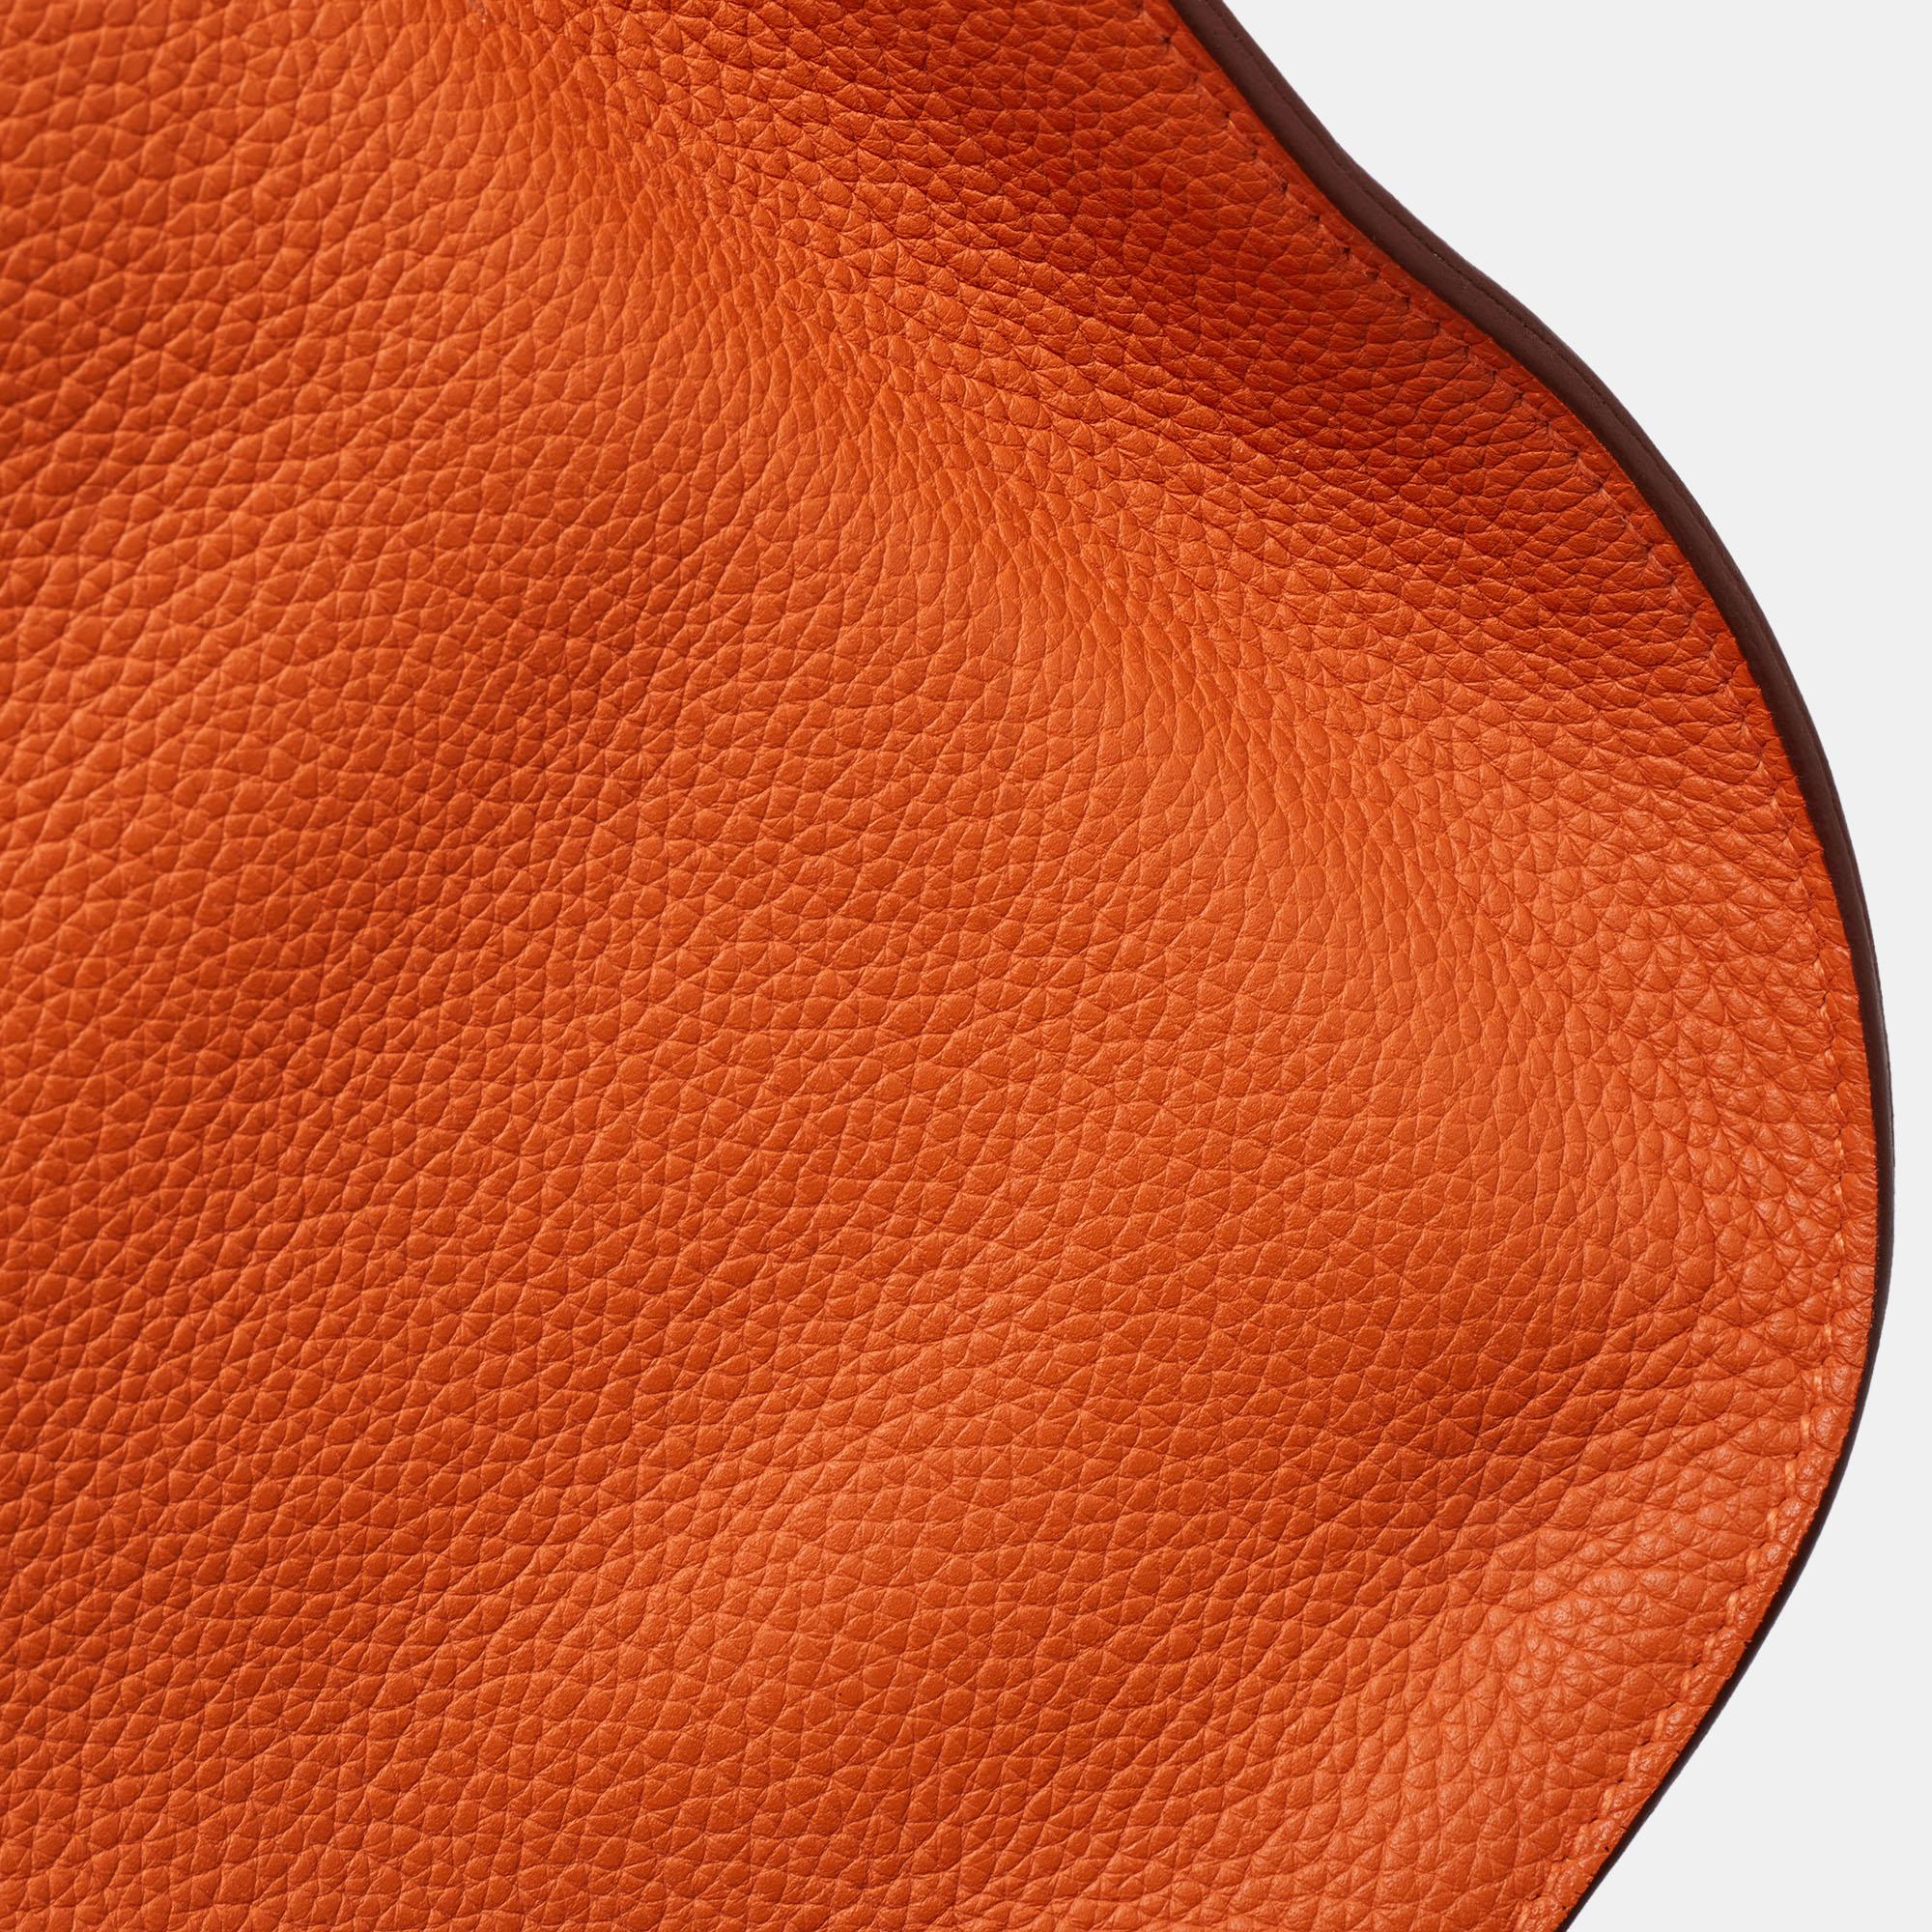 Hermès Orange Togo Leather Palladium Finish Jypsiere 37 Bag For Sale 10